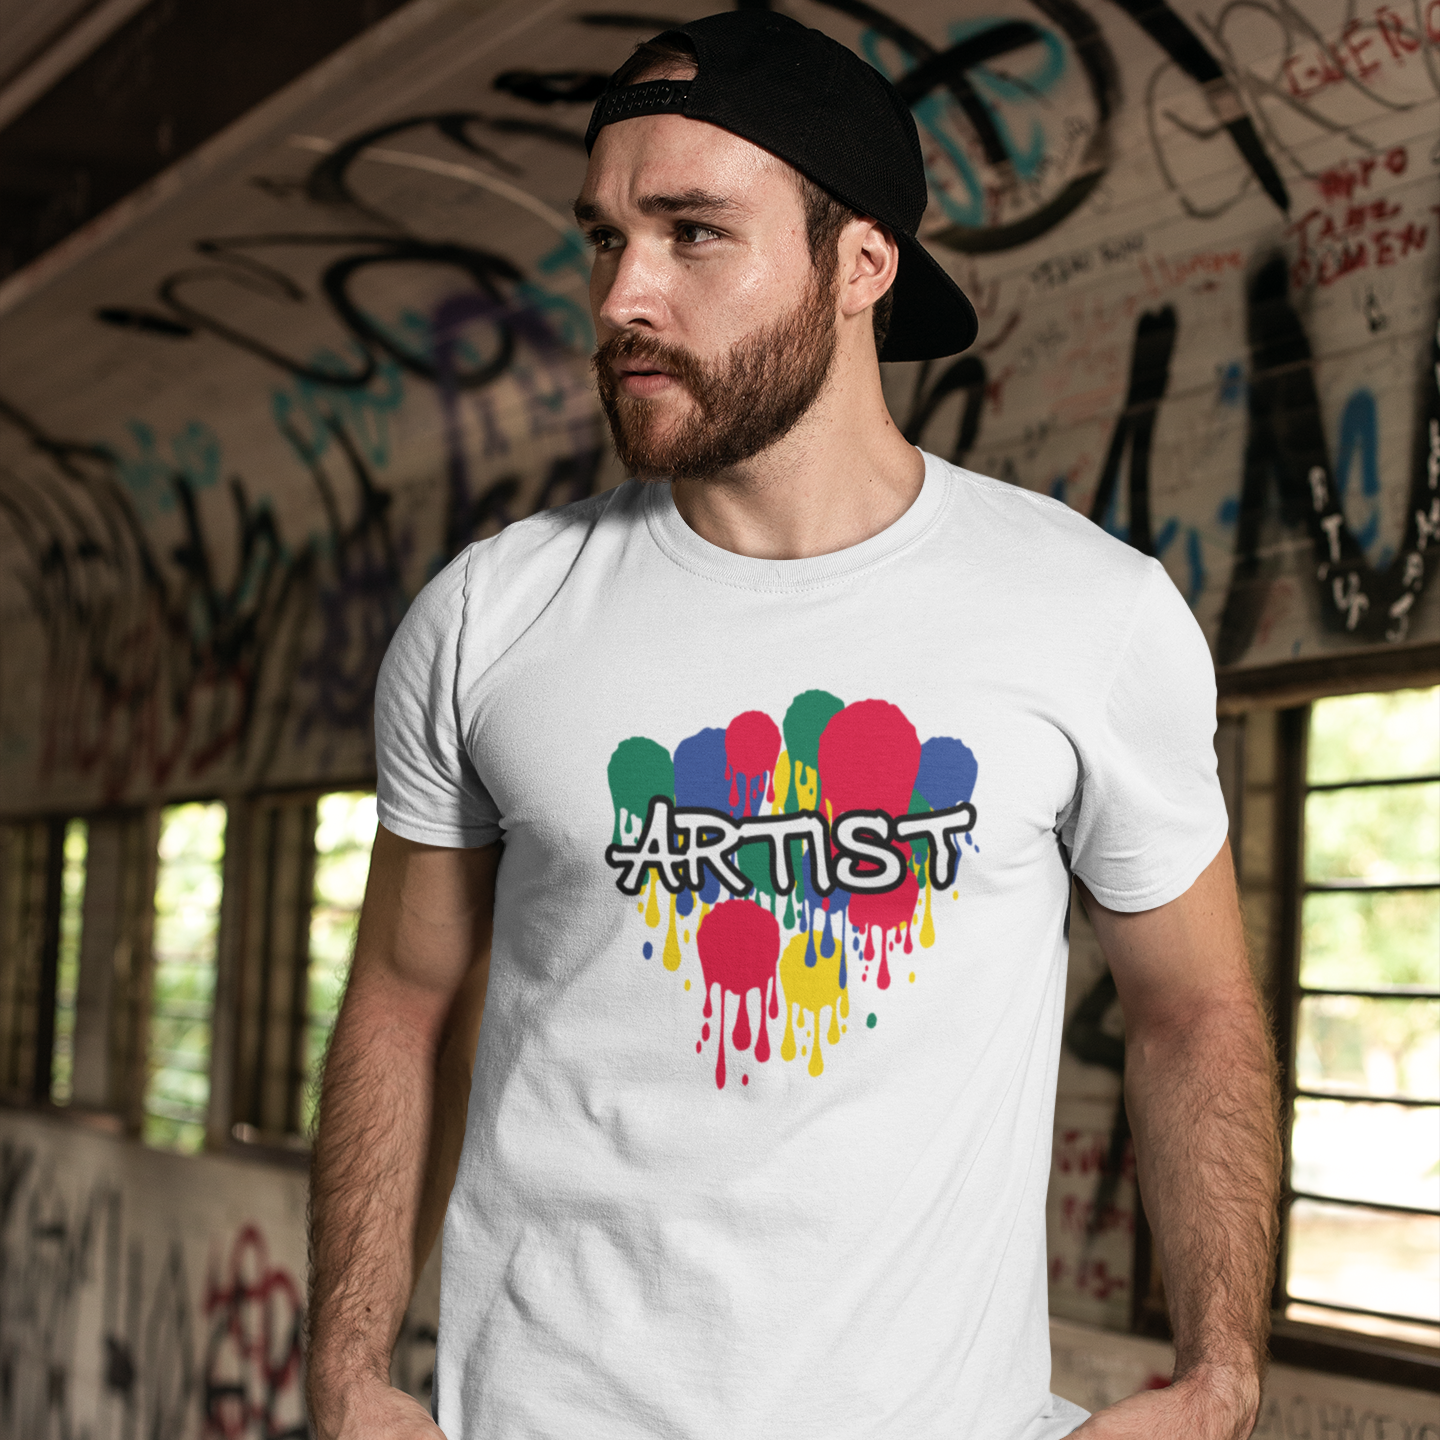 'Artist' adult shirt